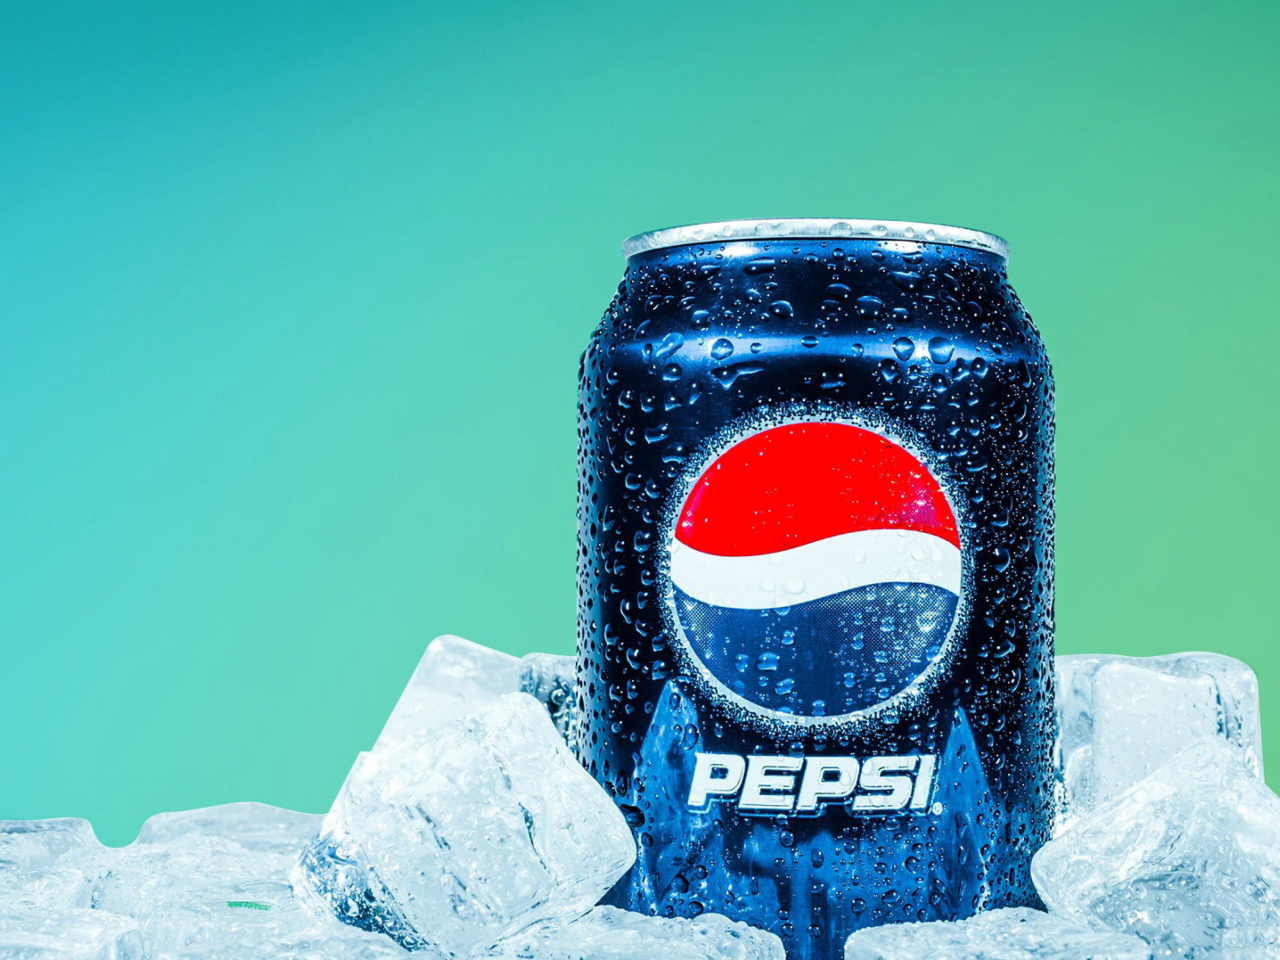 Sfondi Pepsi in Ice 1280x960